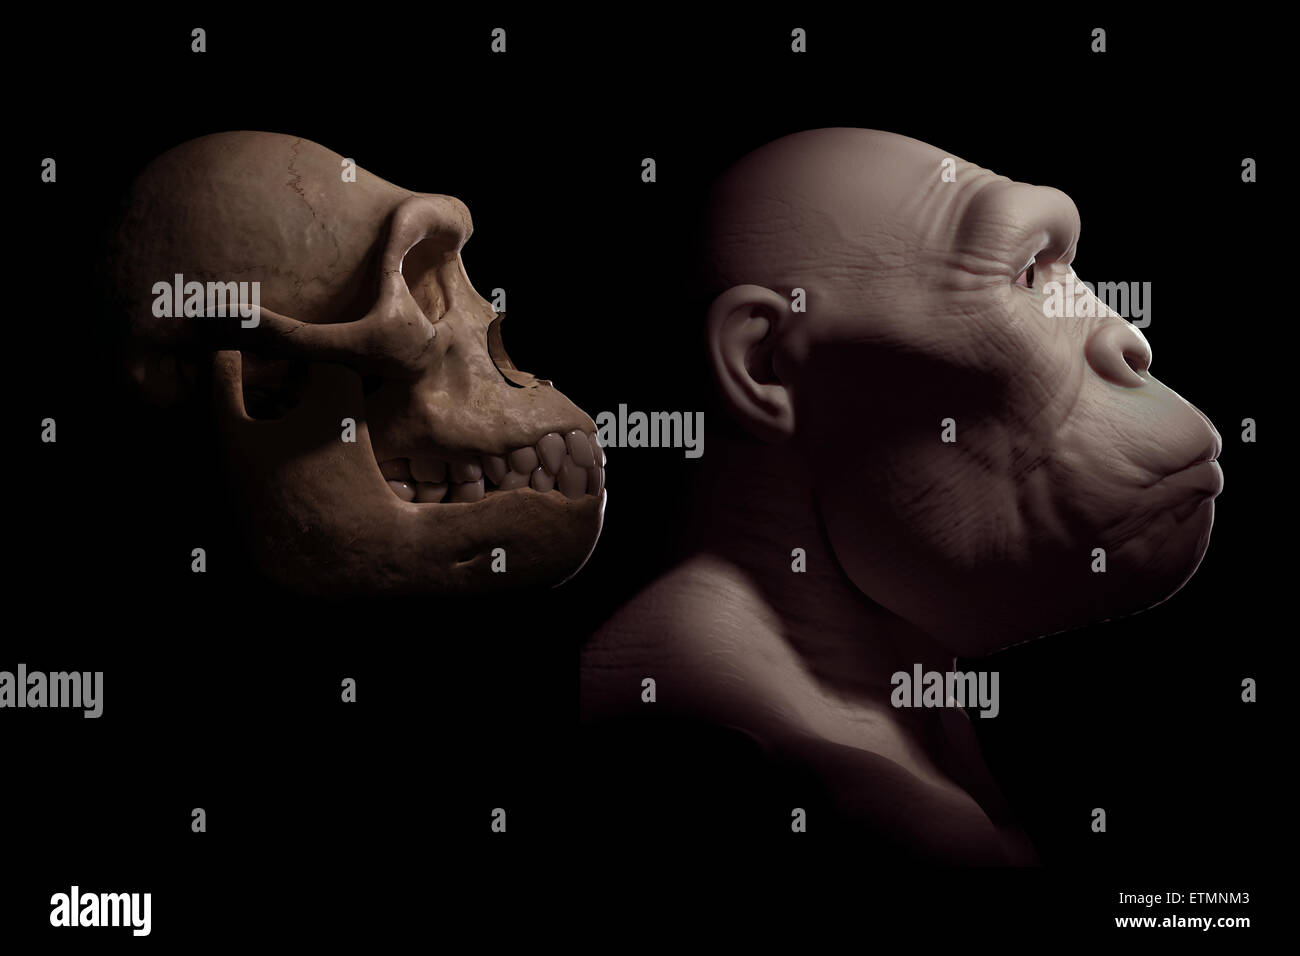 Darstellung eines Australopithecus neben einem Australopithecus Schädel zum Vergleich.  Australopithecus ist eine ausgestorbene Gattung der Hominiden und frühen Vorfahren Homo sapiens. Stockfoto